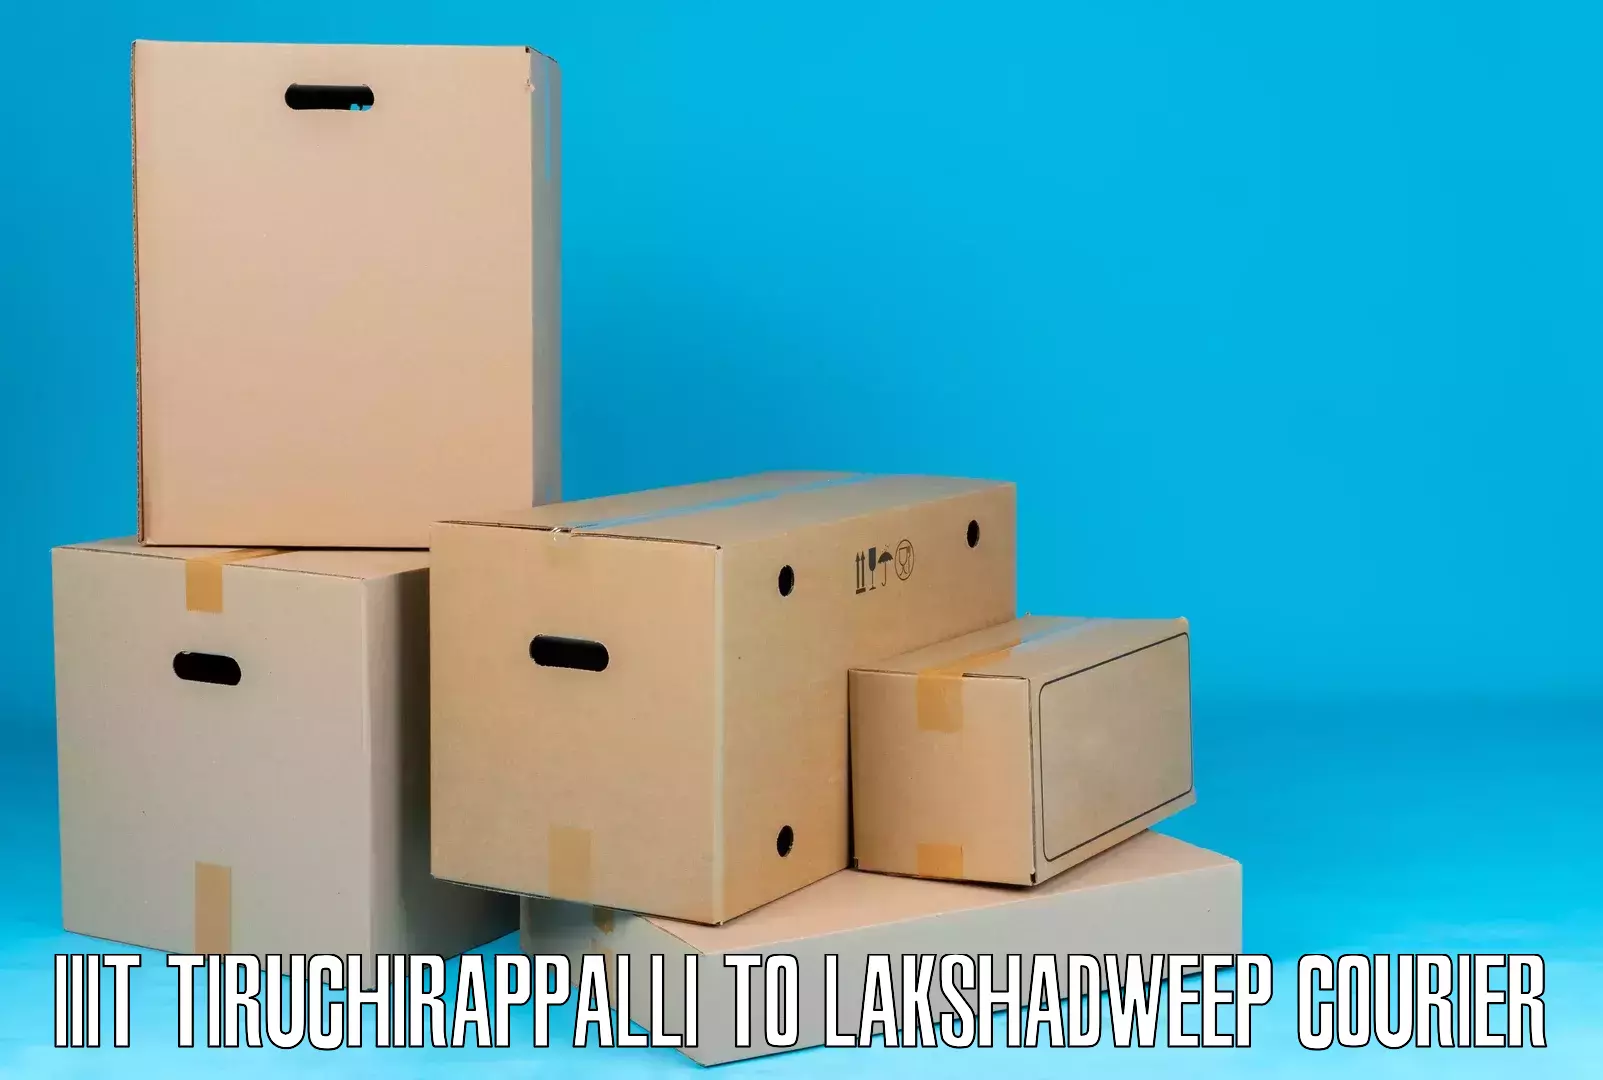 24-hour courier service IIIT Tiruchirappalli to Lakshadweep